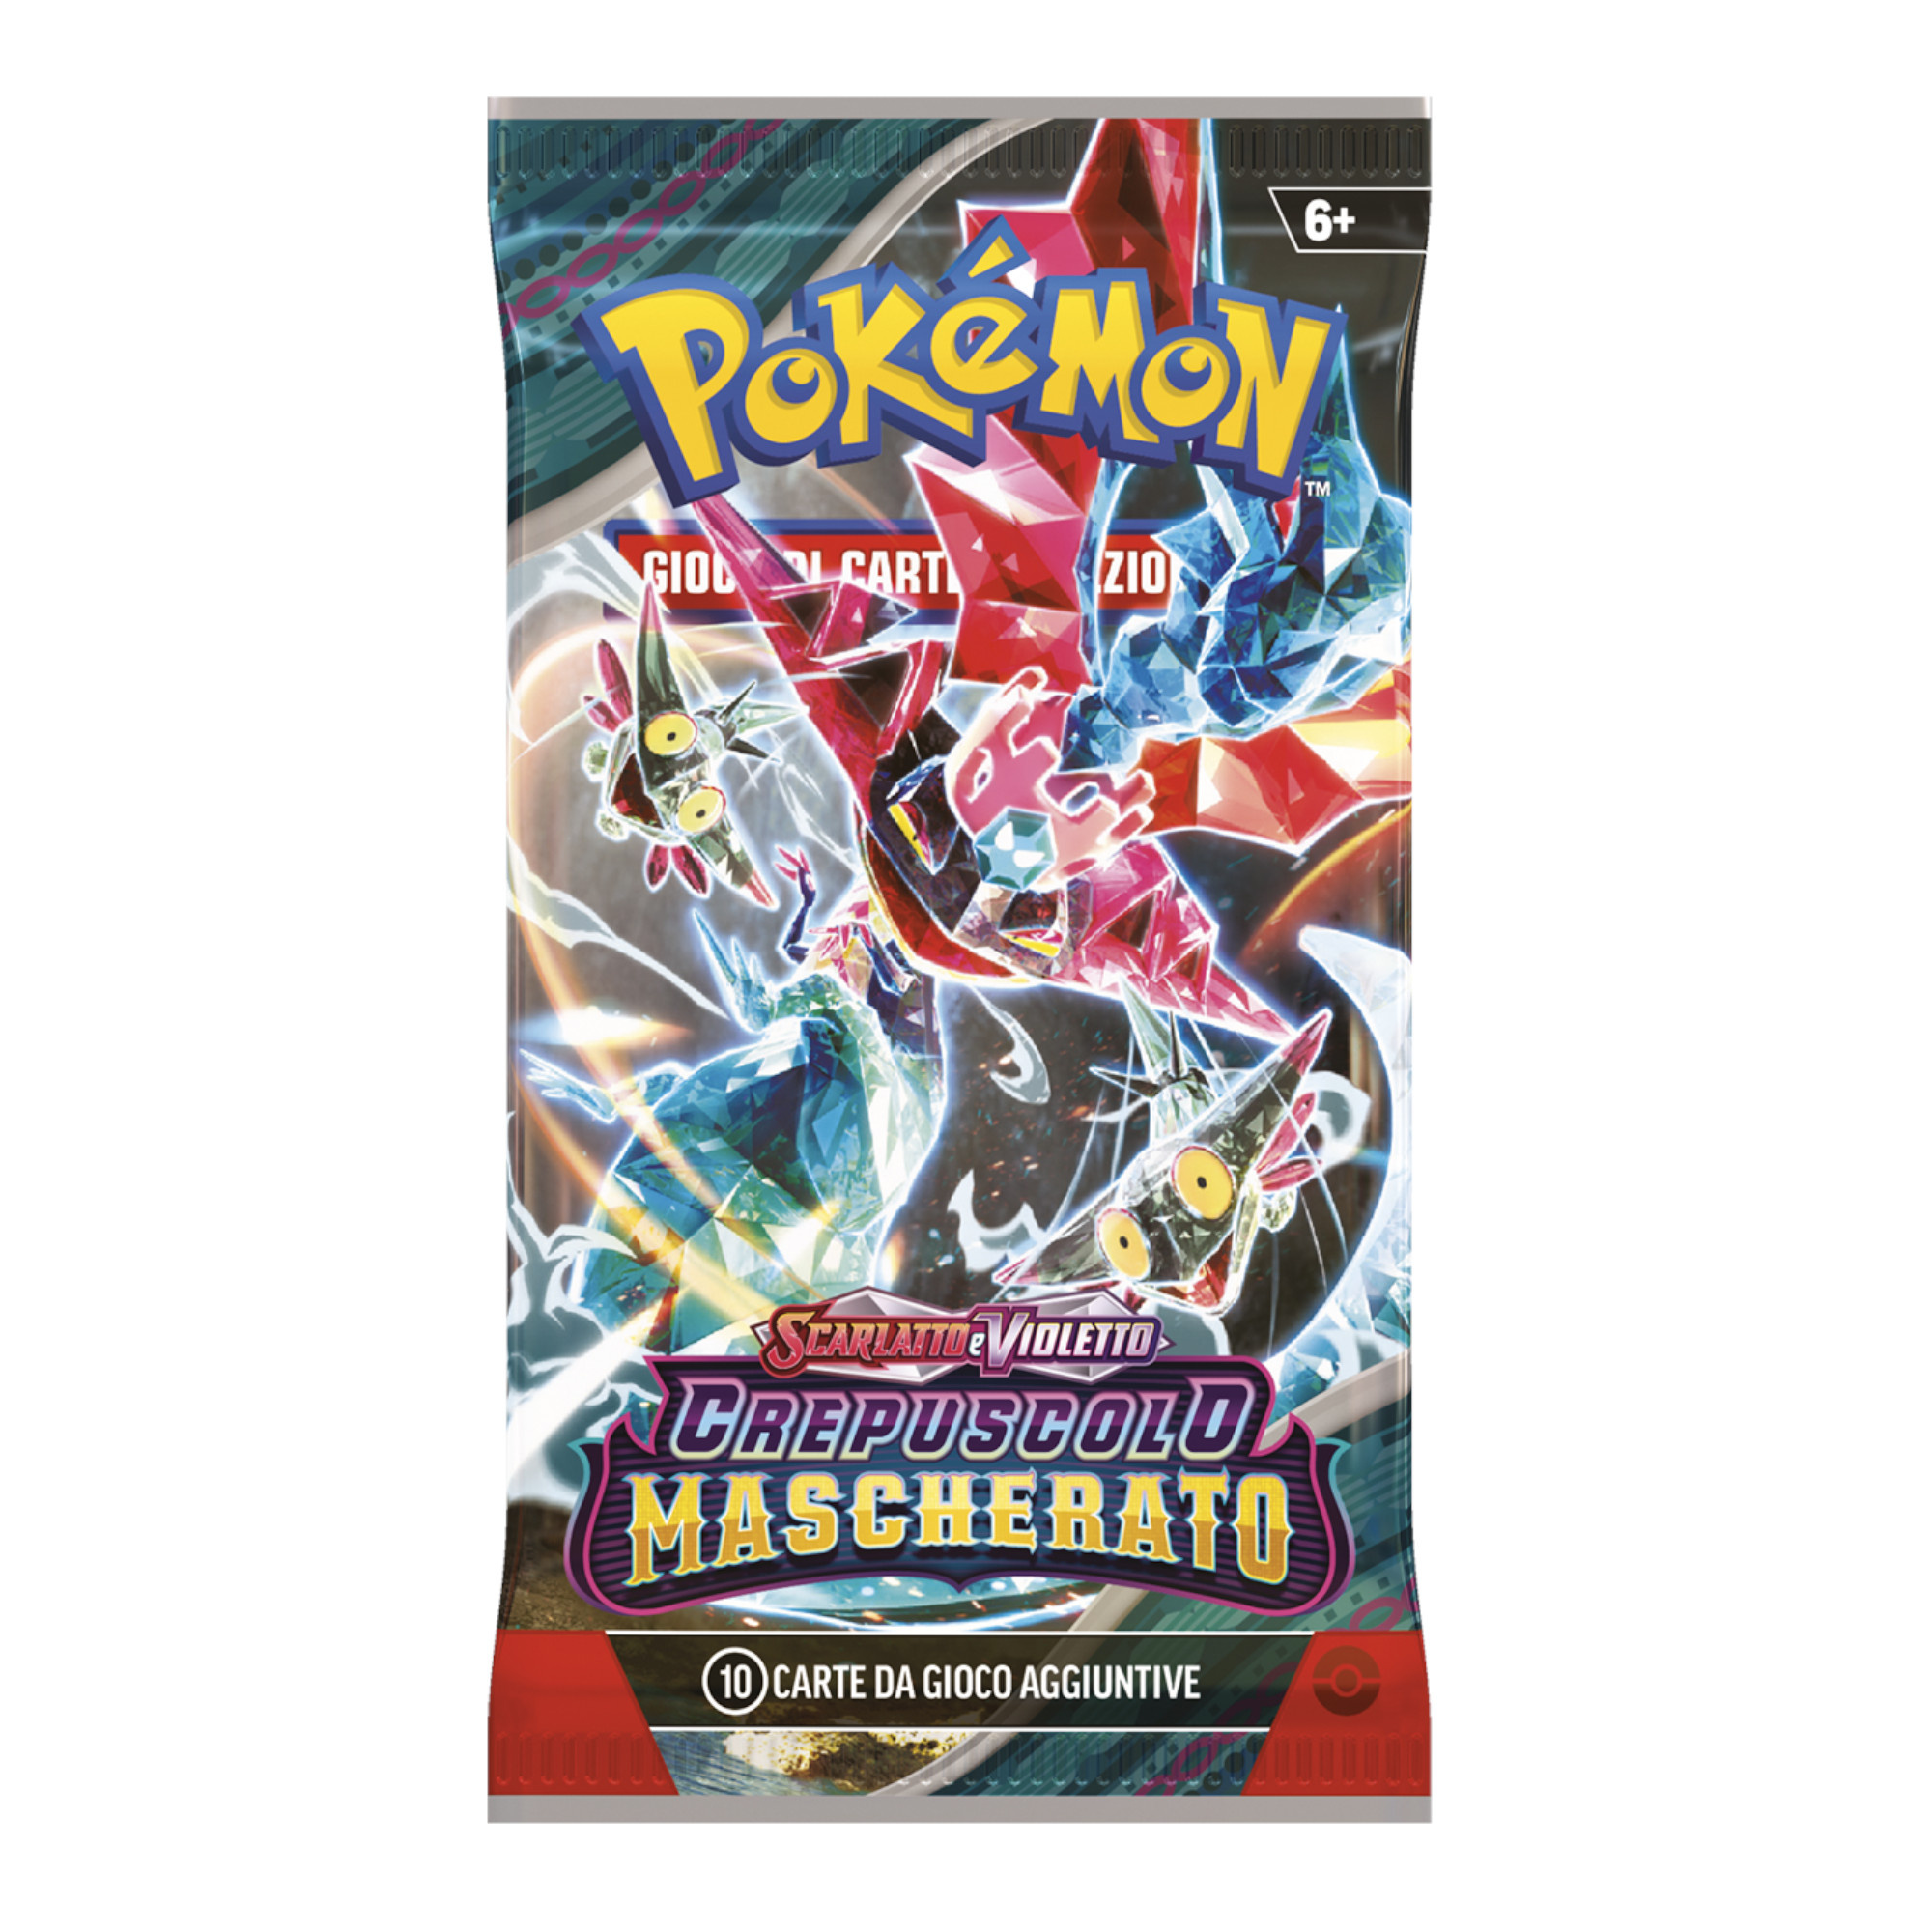 Pokémon scarlatto e violetto crepuscolo mascherato busta 10 carte - POKEMON